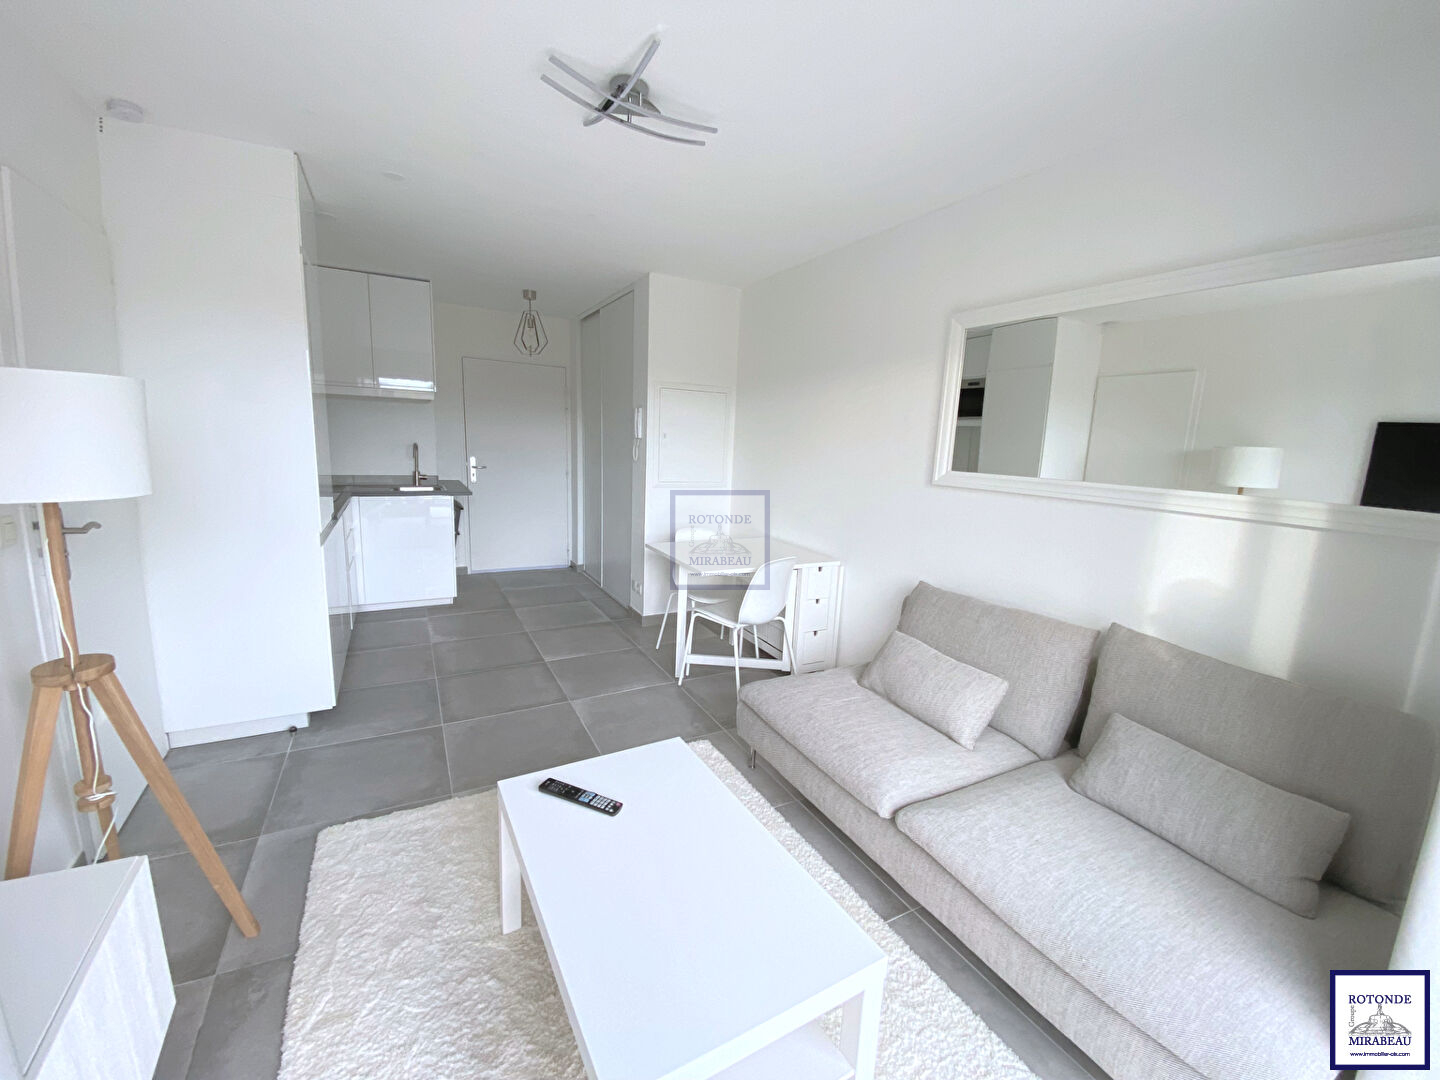 Location Appartement AIX EN PROVENCE surface habitable de 31.13 m²